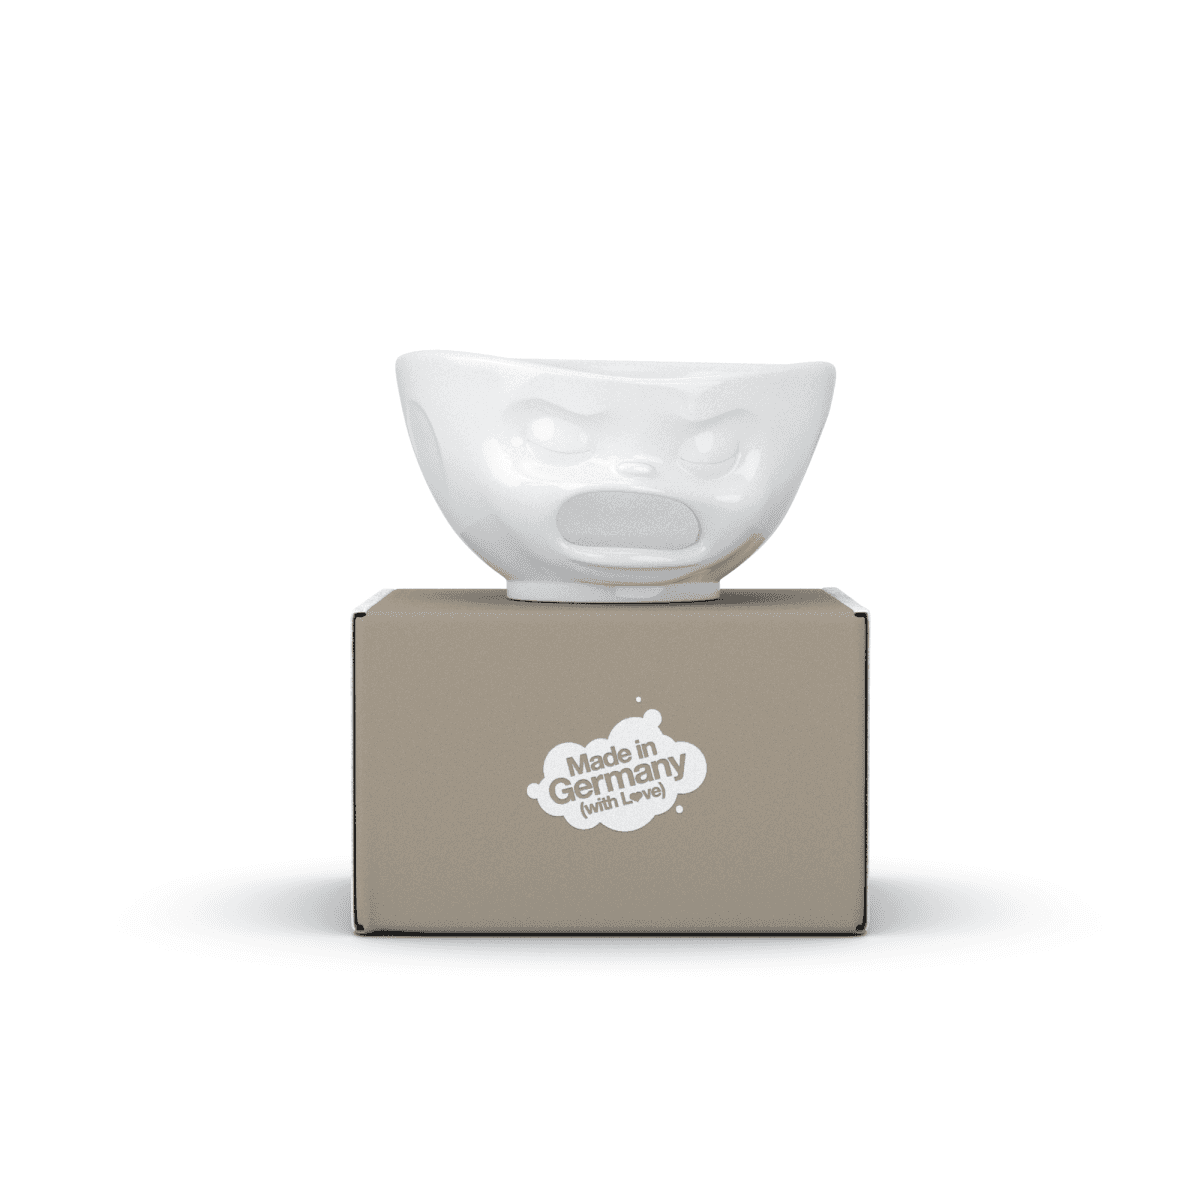 Immagine del prodotto Ciotola con foro Vomito 3D in Porcellana 1000 ml | TASSEN By Fiftyeight Products